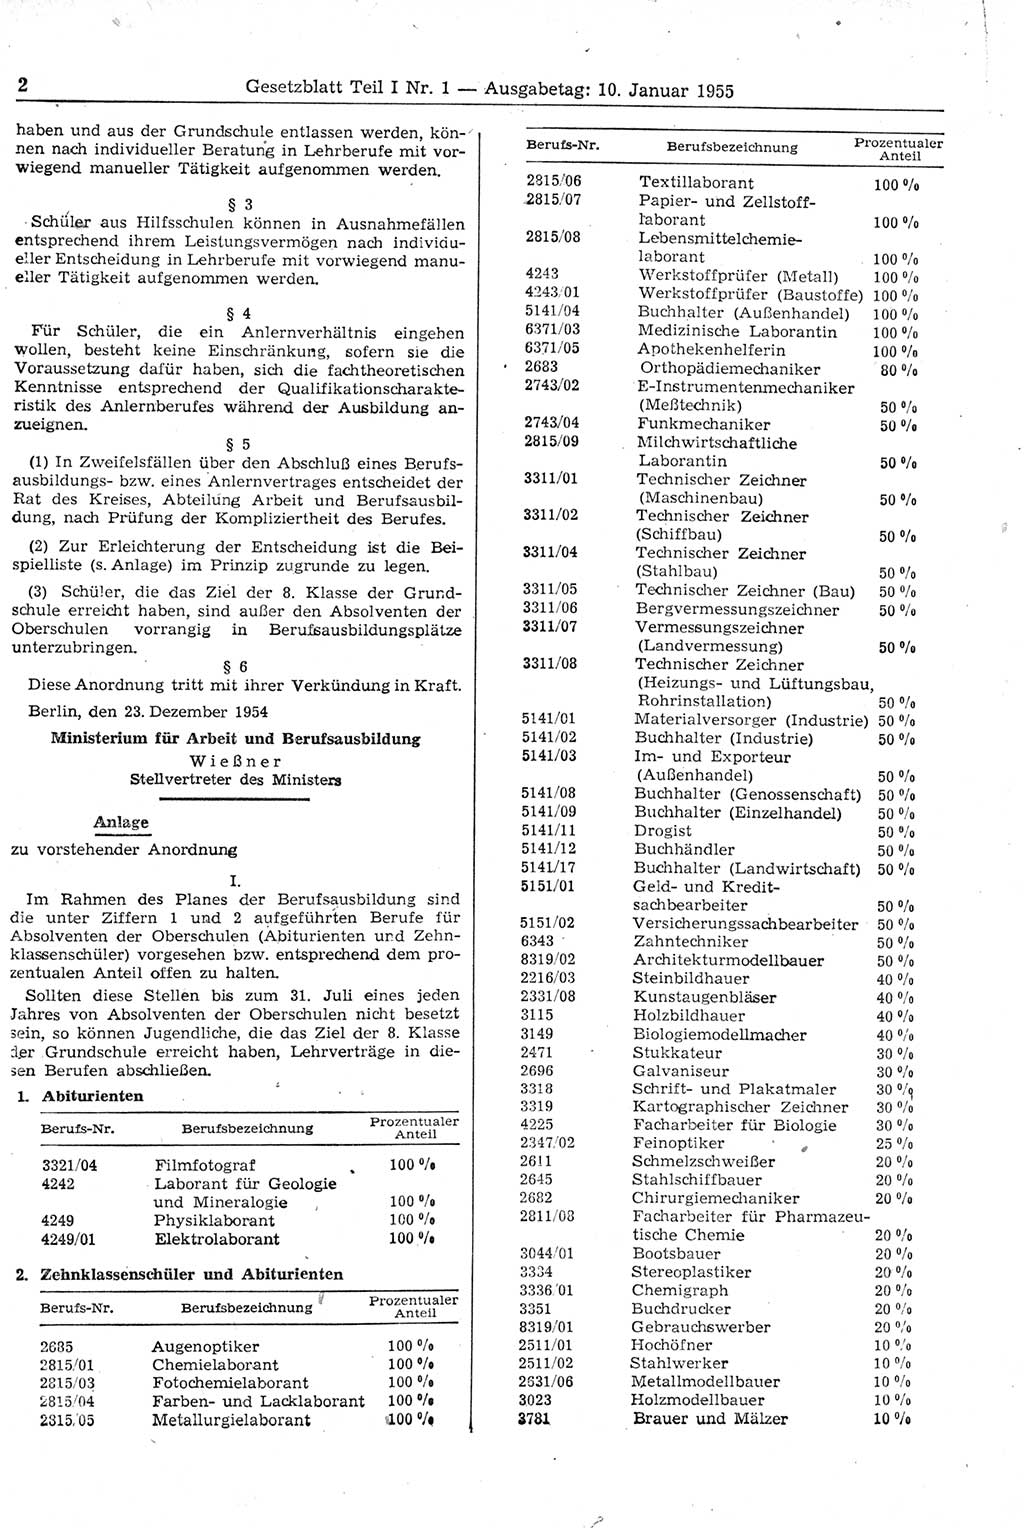 Gesetzblatt (GBl.) der Deutschen Demokratischen Republik (DDR) Teil Ⅰ 1955, Seite 2 (GBl. DDR Ⅰ 1955, S. 2)